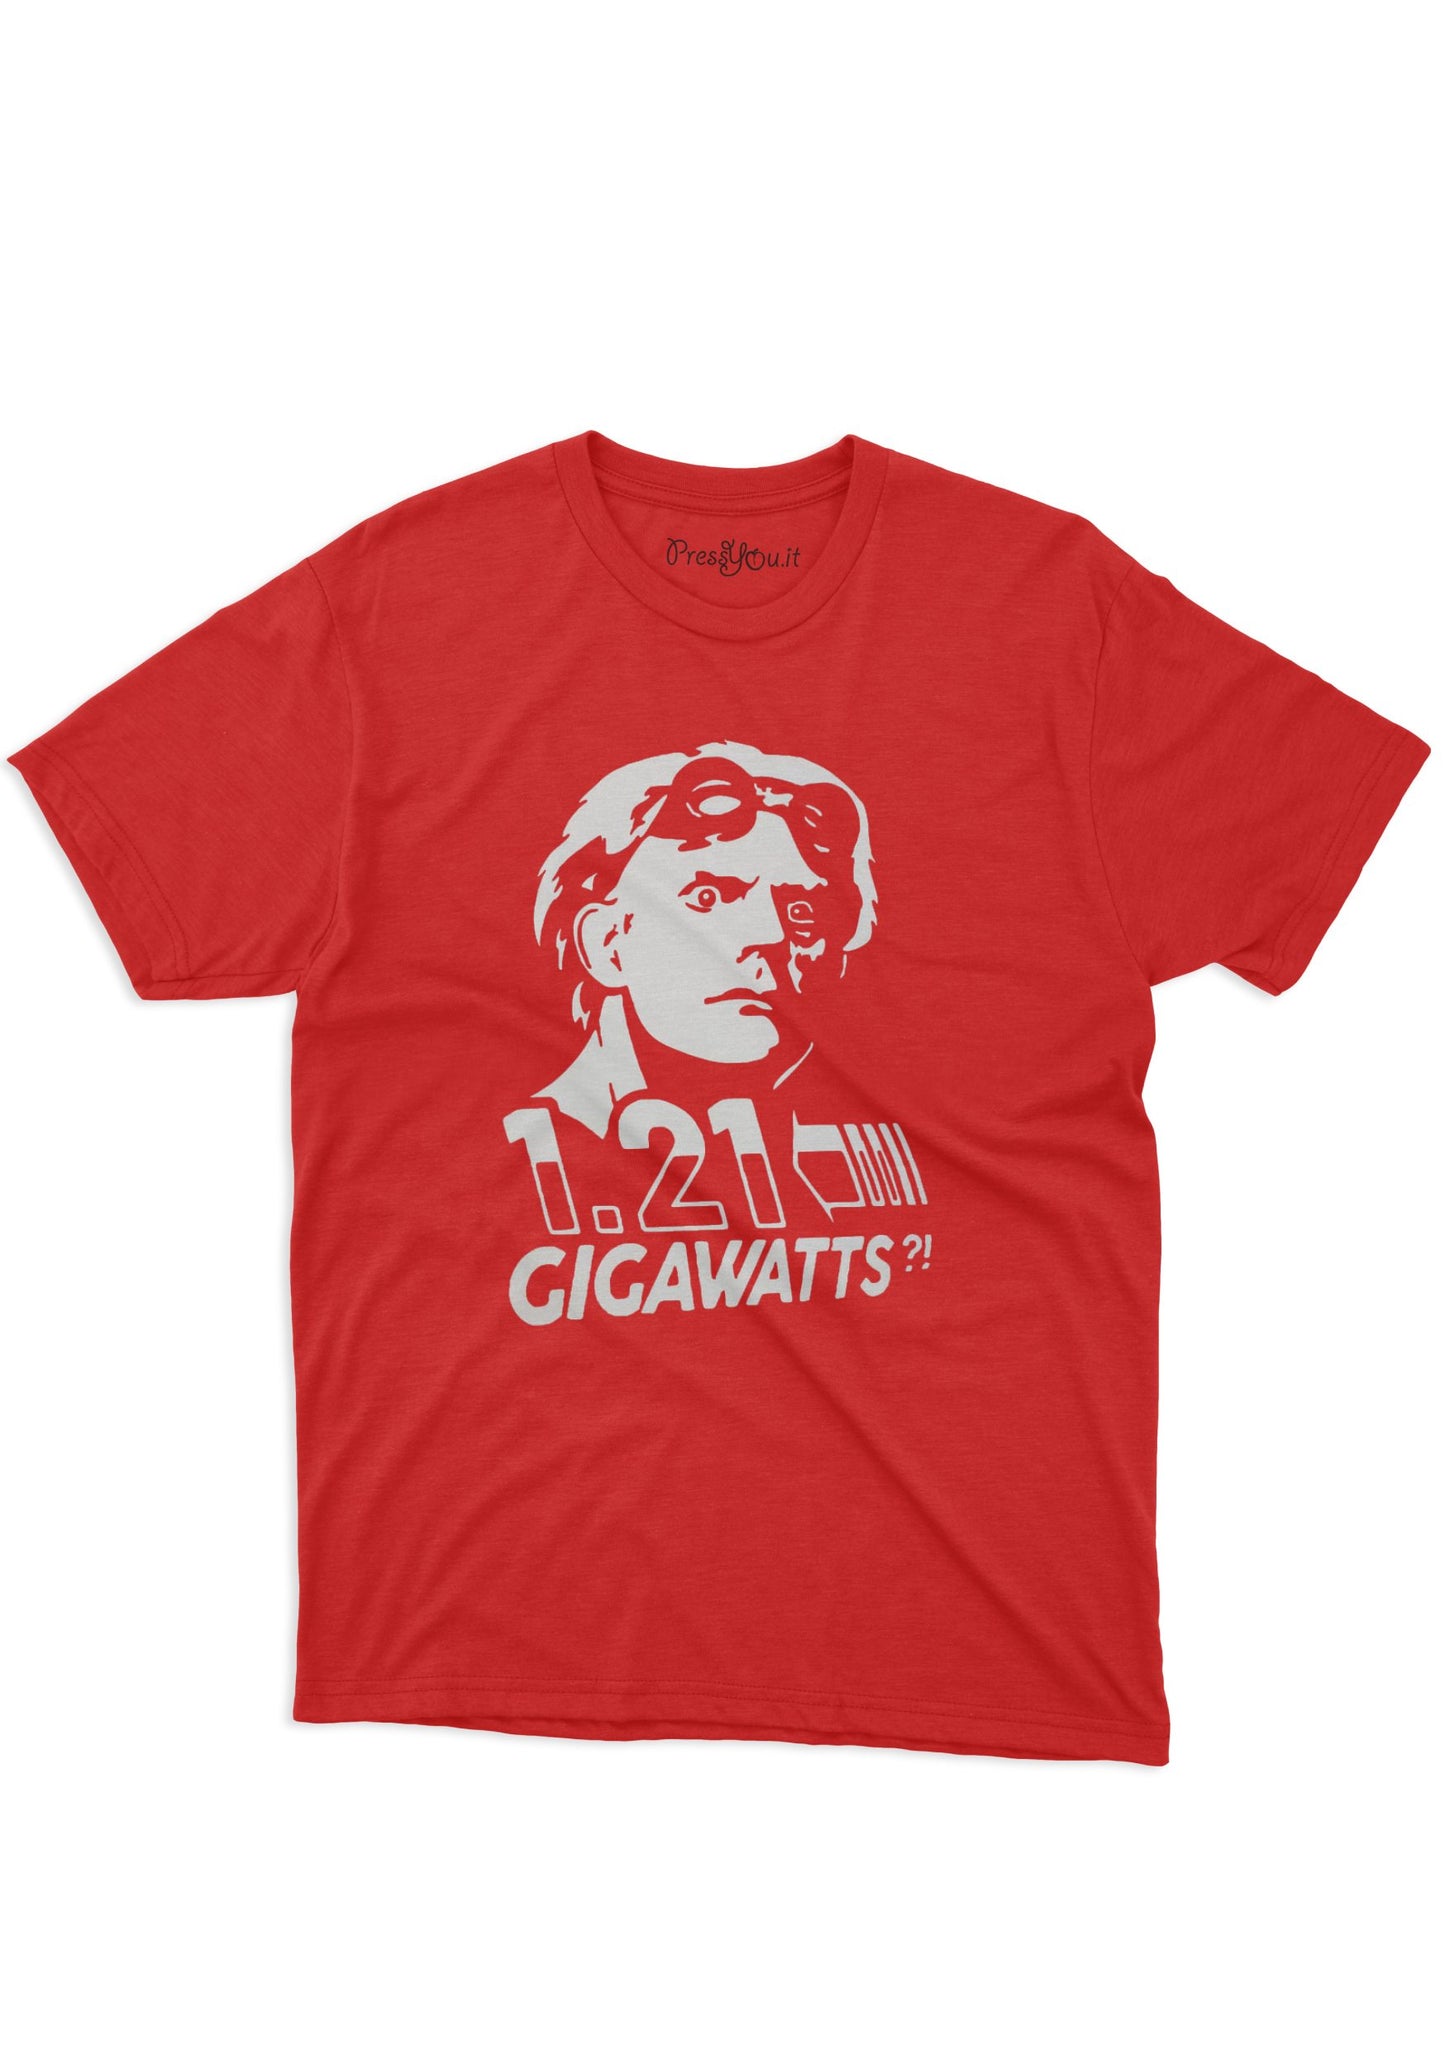 maglietta t-shirt-doc future 1 21 gigawatts